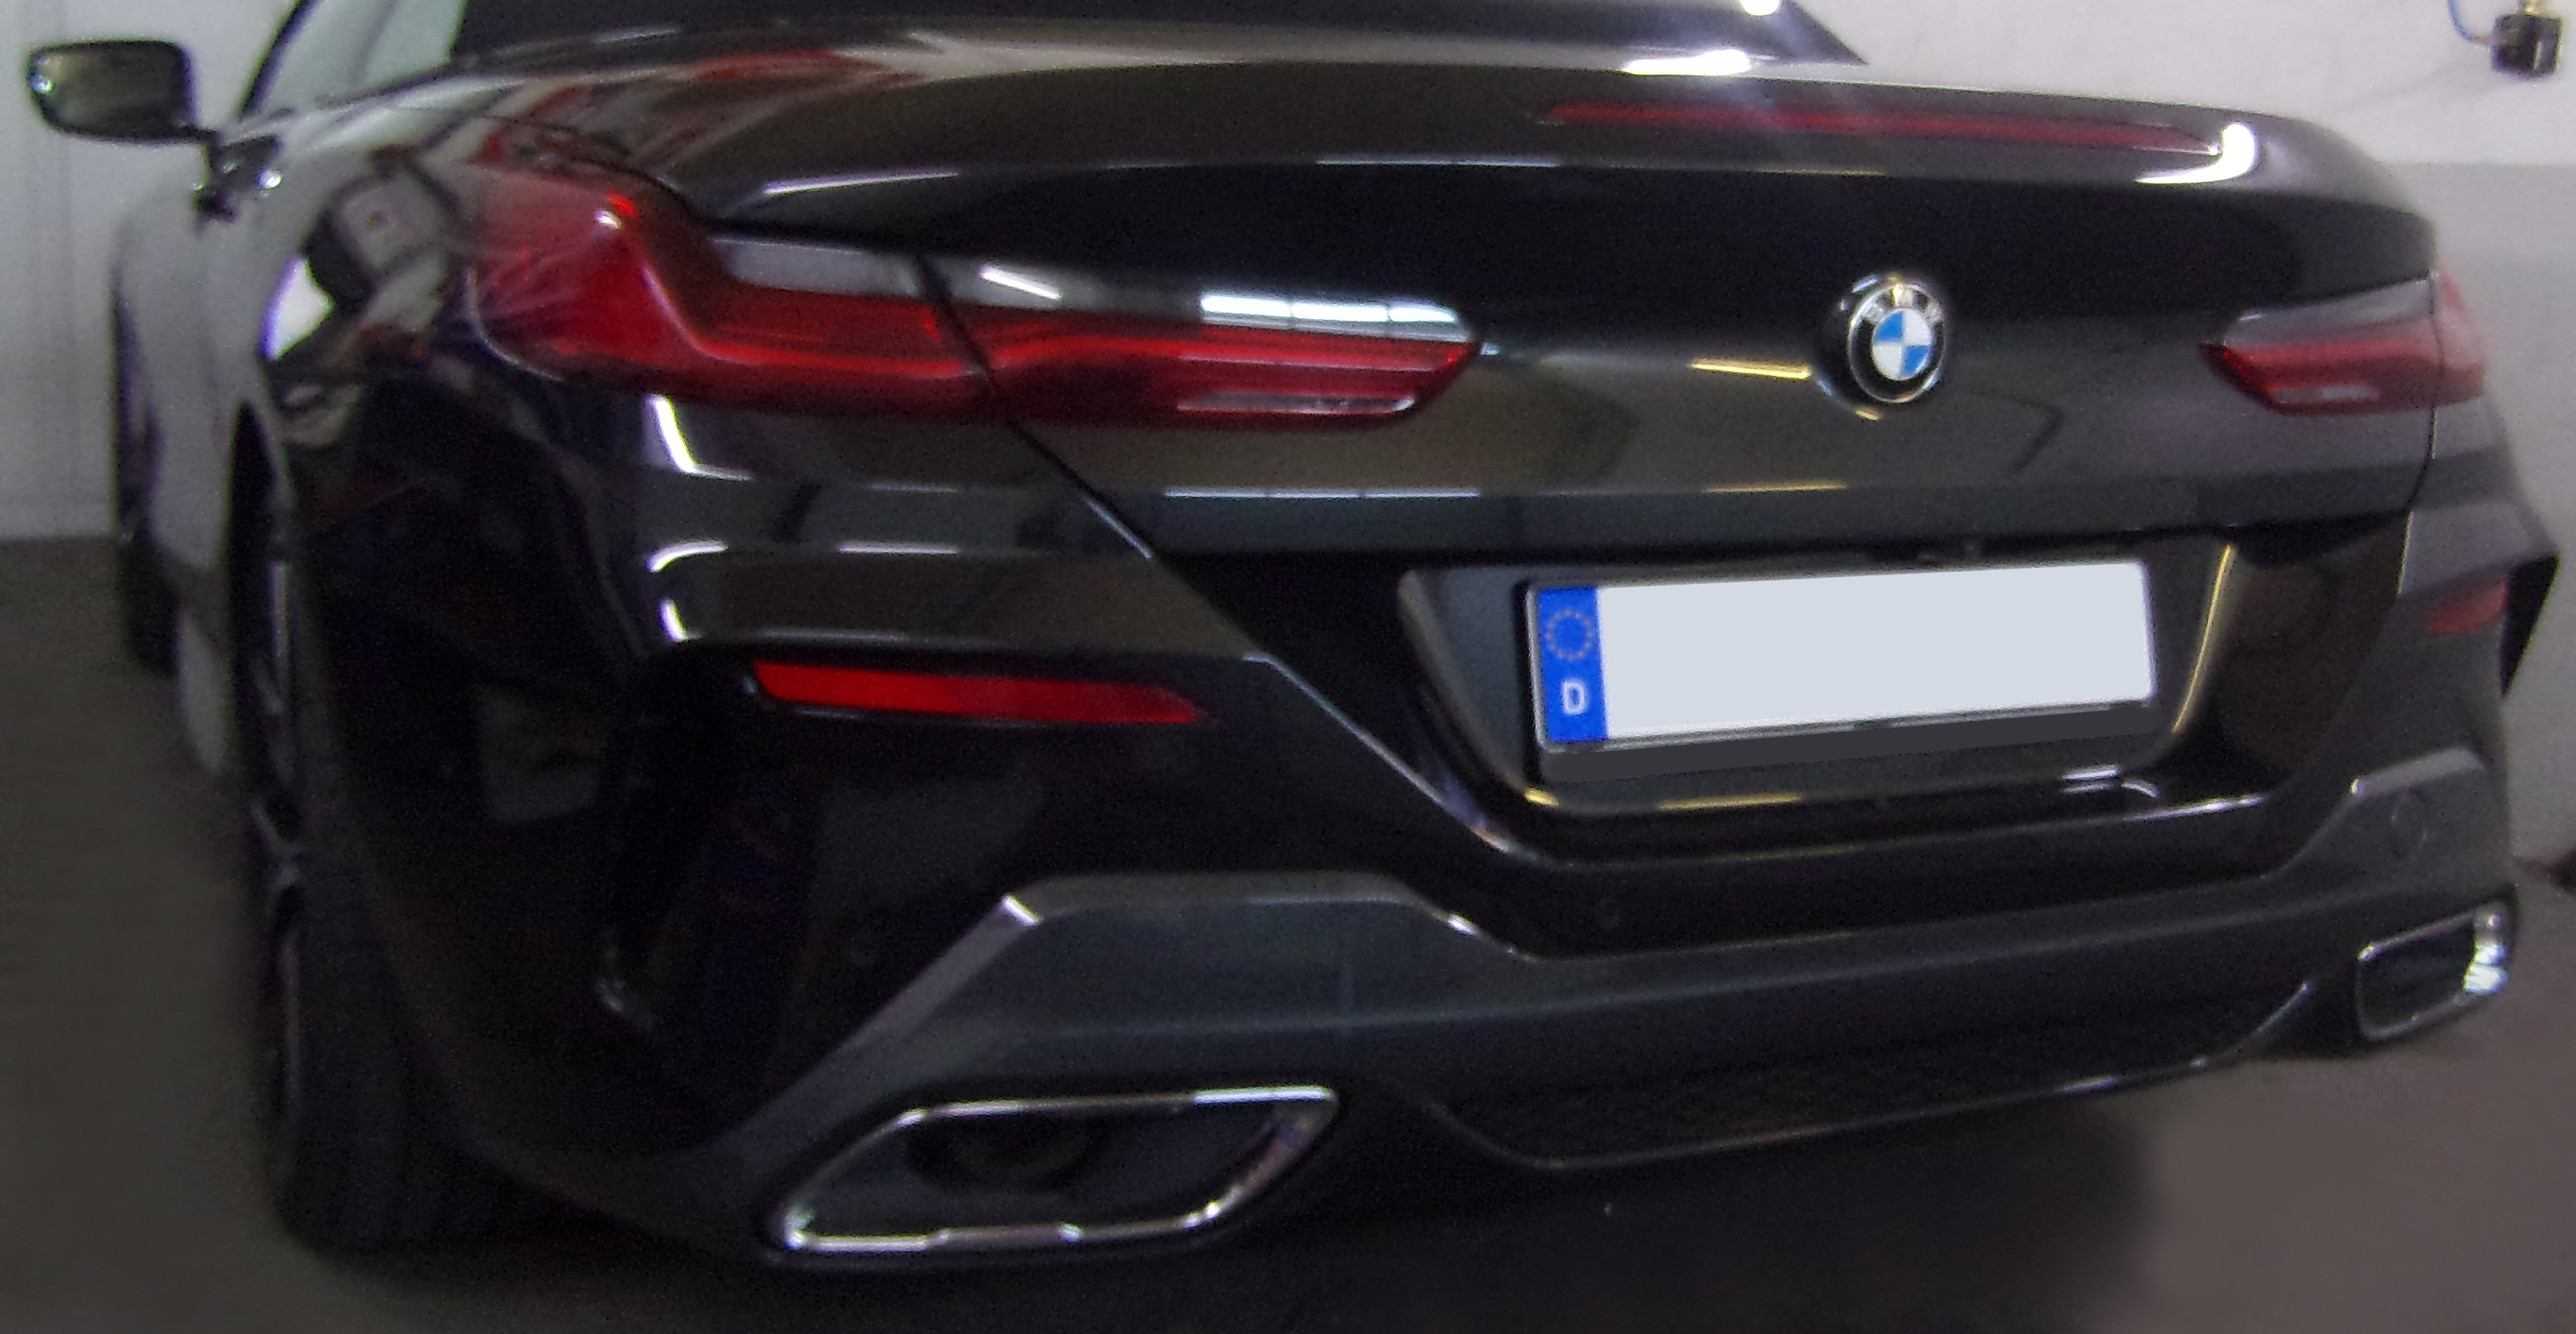 Anhängerkupplung für BMW-8er G14 Cabrio, nur für Heckträgerbetrieb, Baujahr 2019-